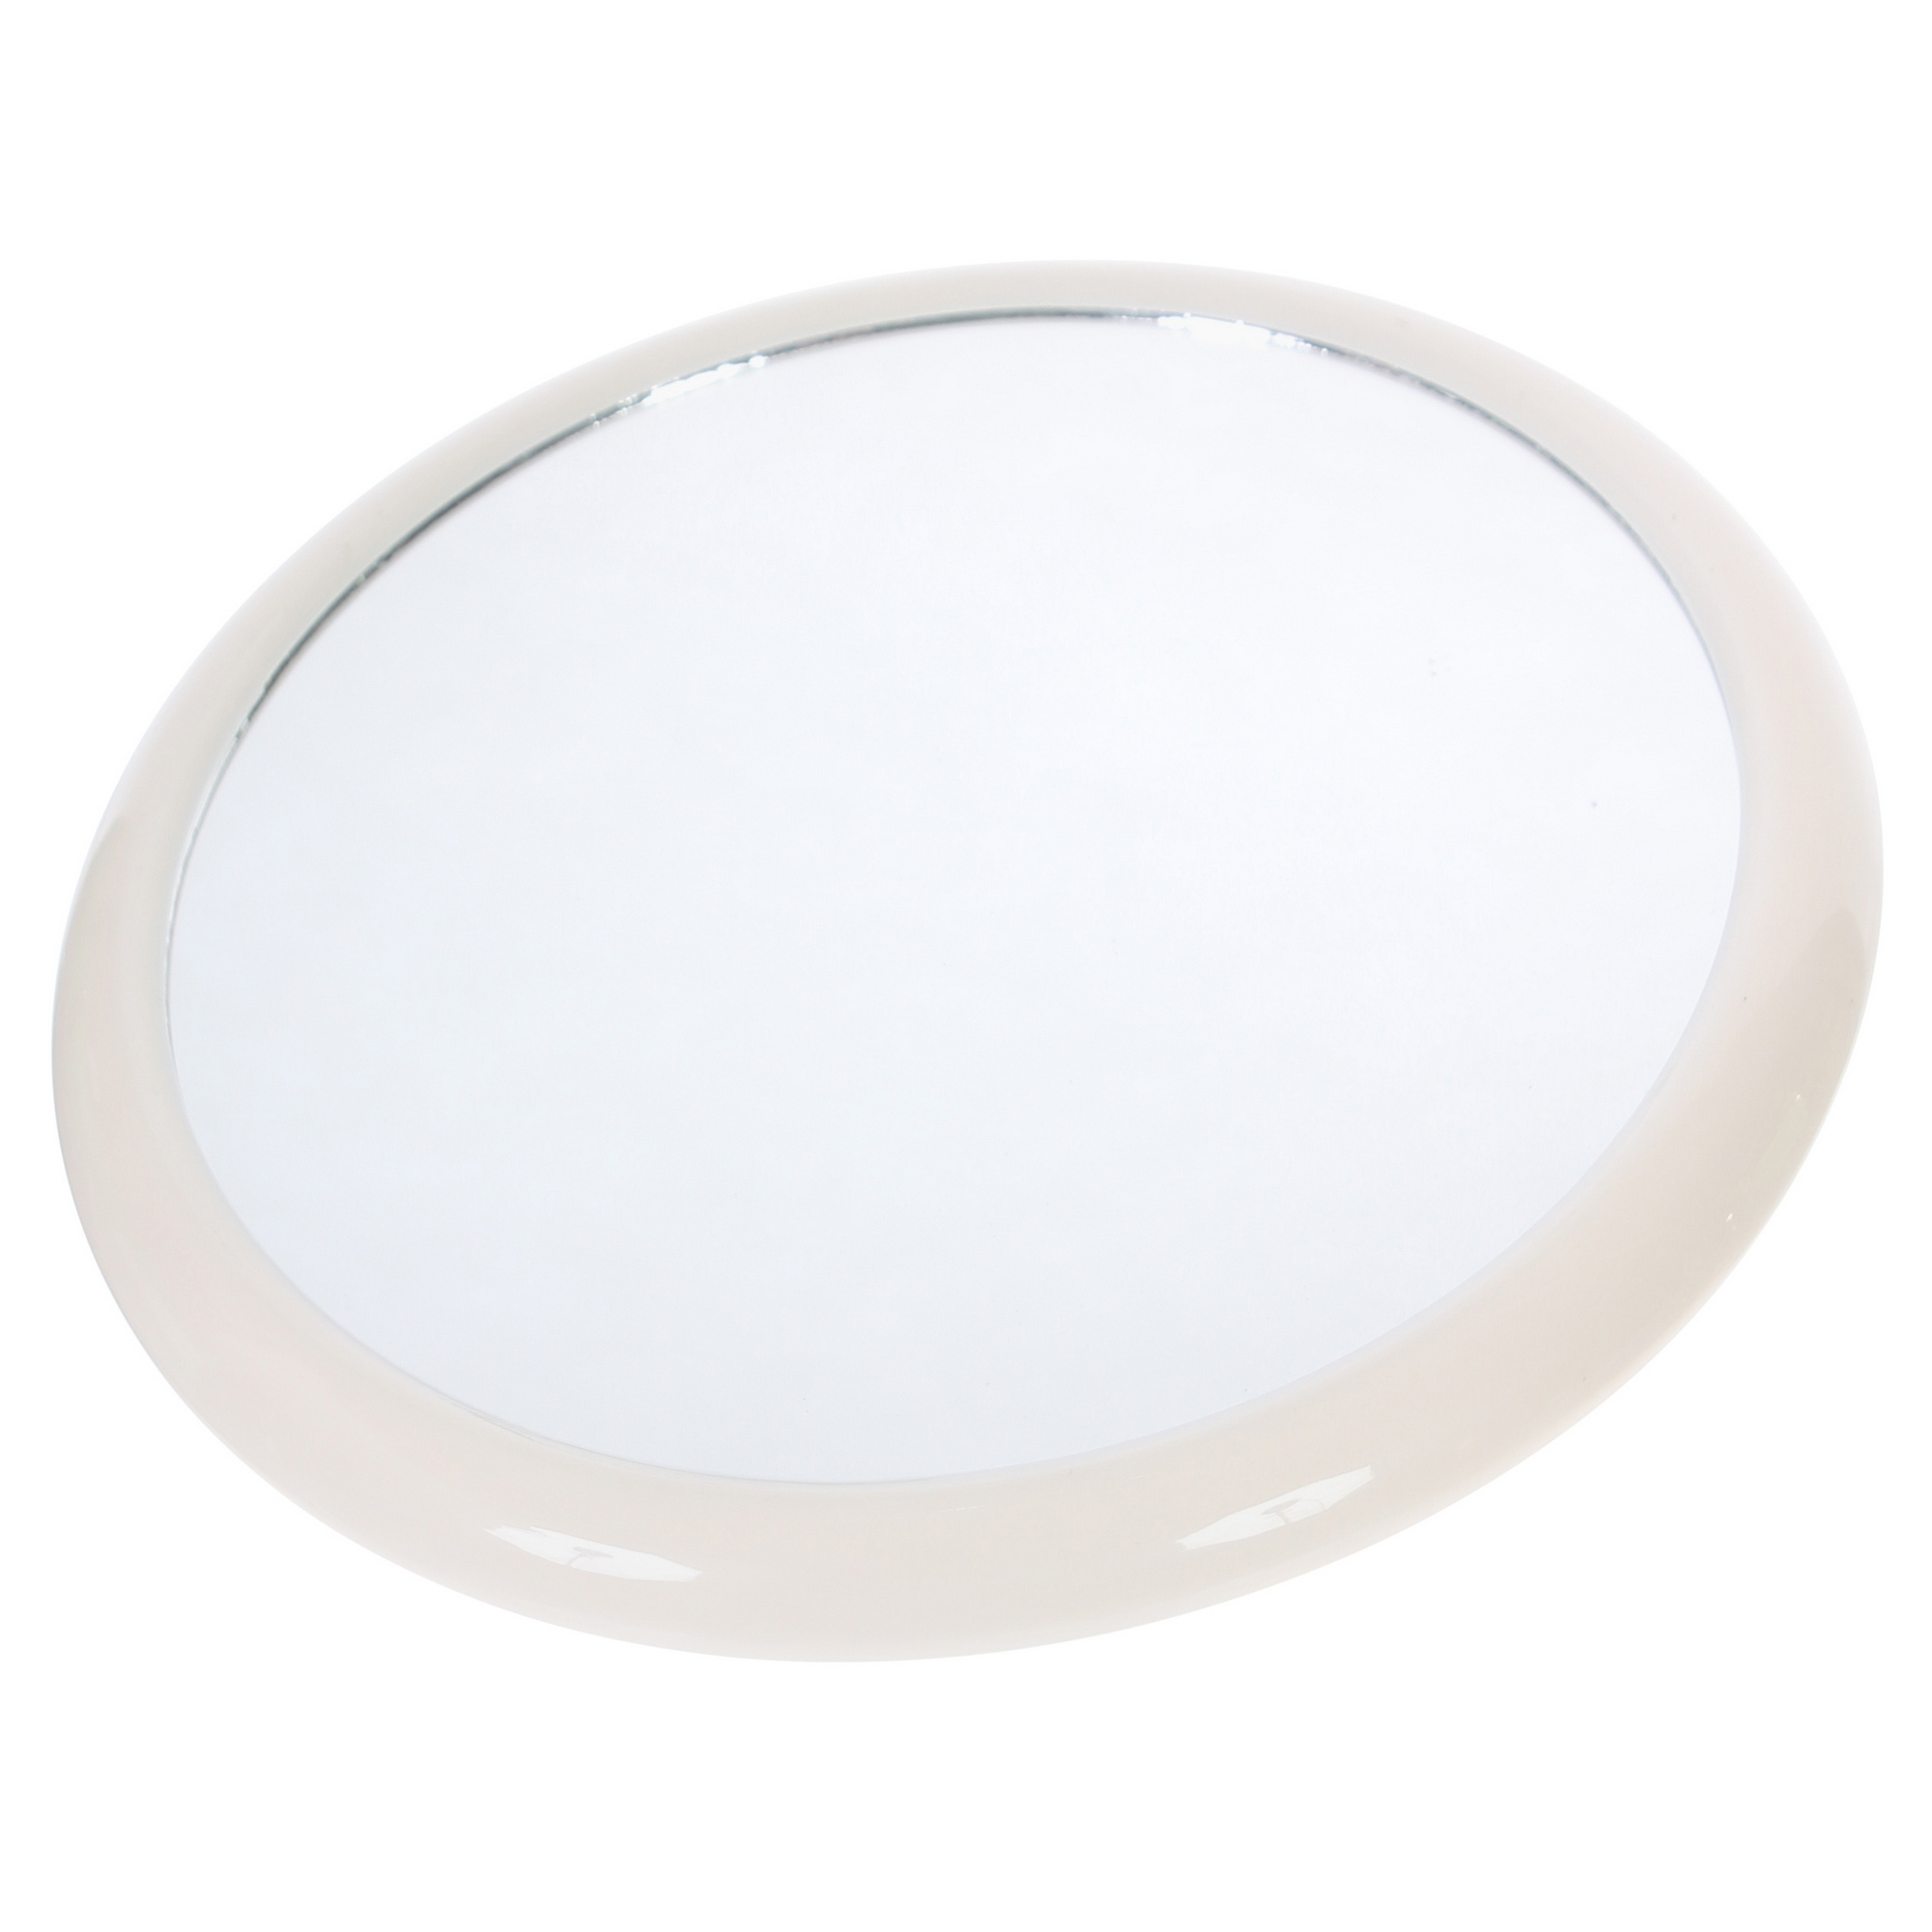 81974155 Зеркало косметическое на вакуумной присоске диаметр 19.5 см материал пластик ELEMENT STLM-0016240 GRAMPUS